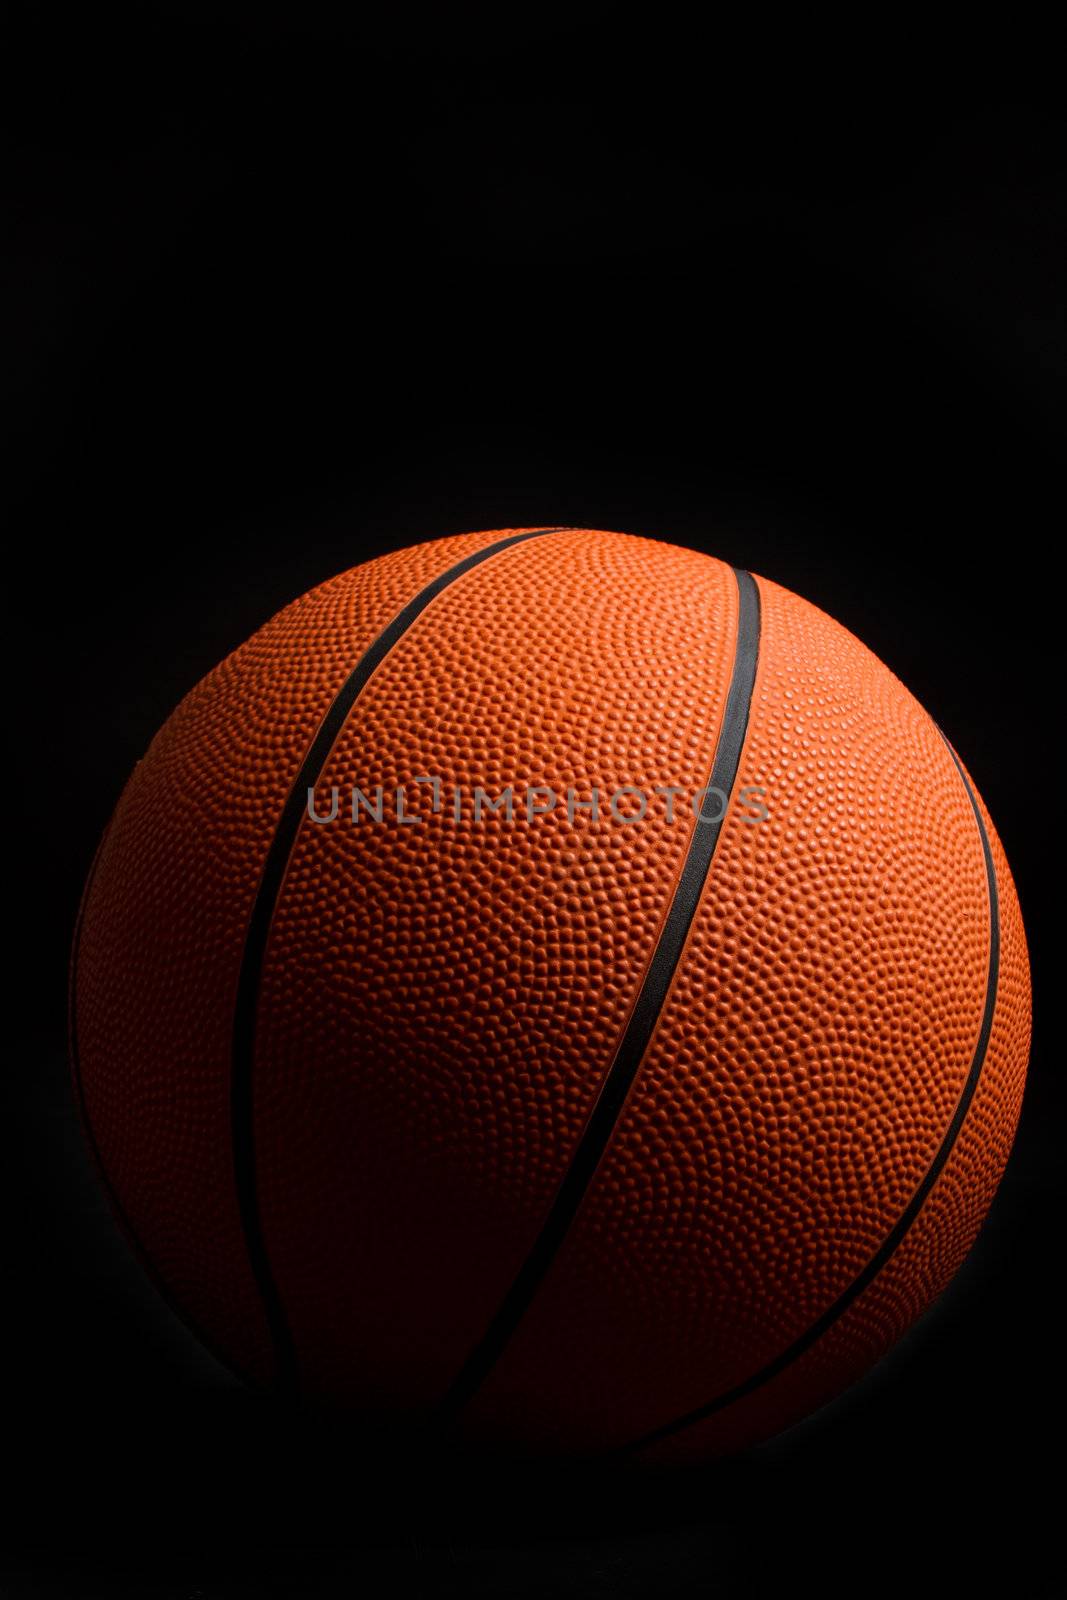 Orange basketball on black background